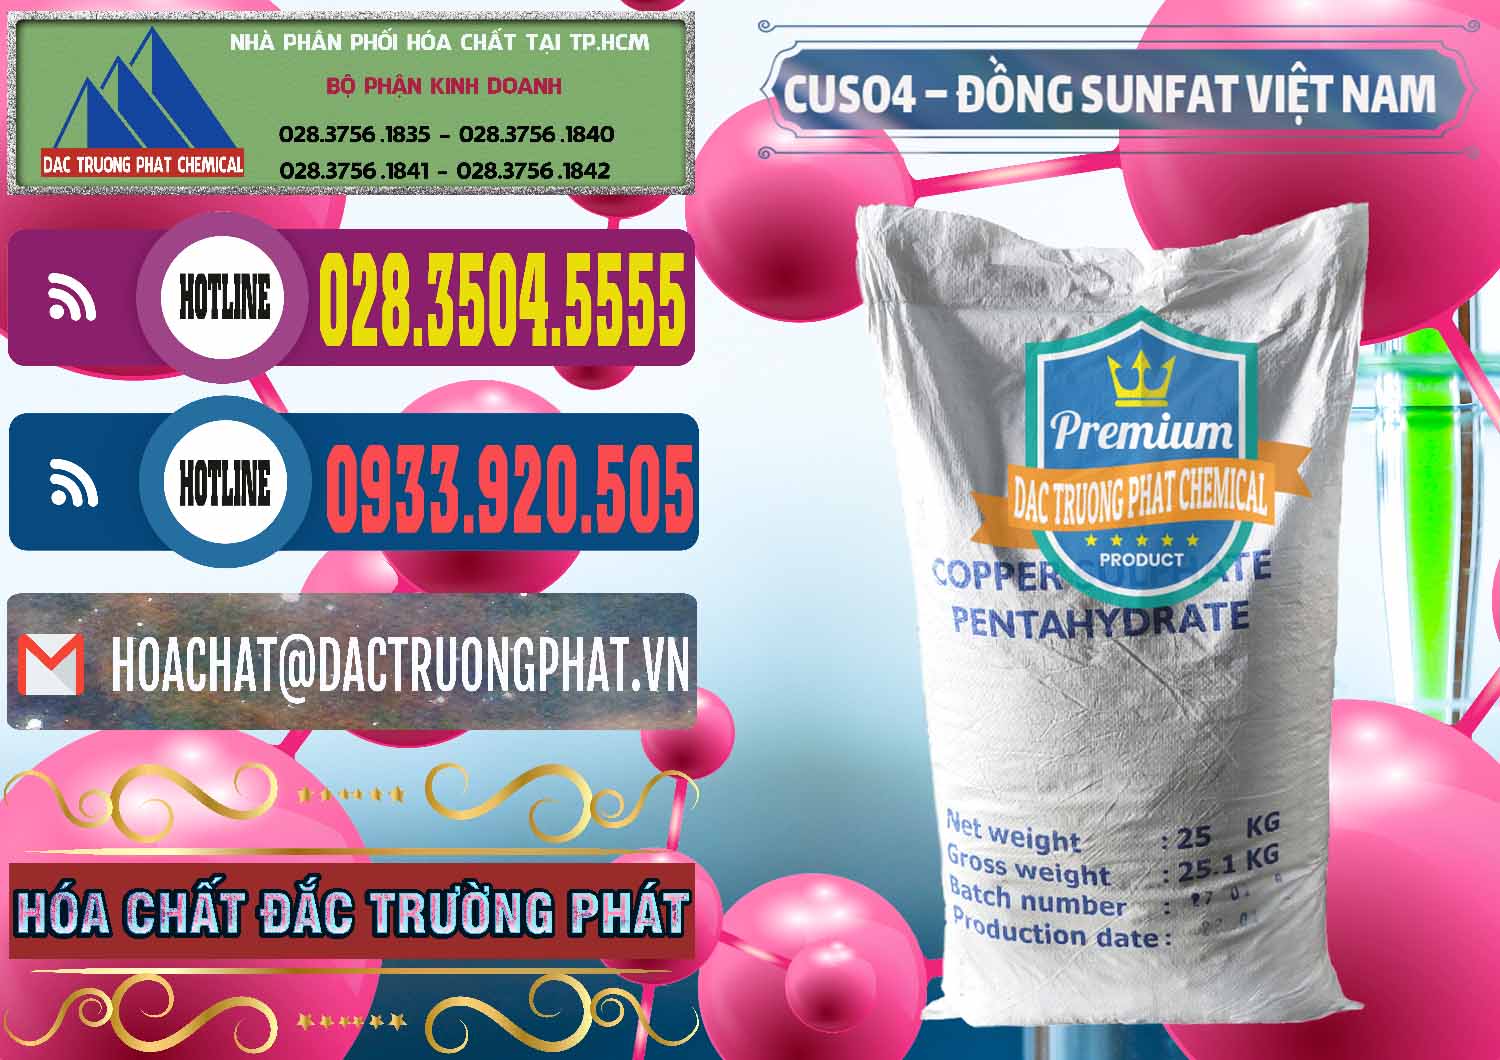 Công ty chuyên cung cấp & bán CuSO4 – Đồng Sunfat Dạng Bột Việt Nam - 0196 - Cung cấp ( bán ) hóa chất tại TP.HCM - muabanhoachat.com.vn